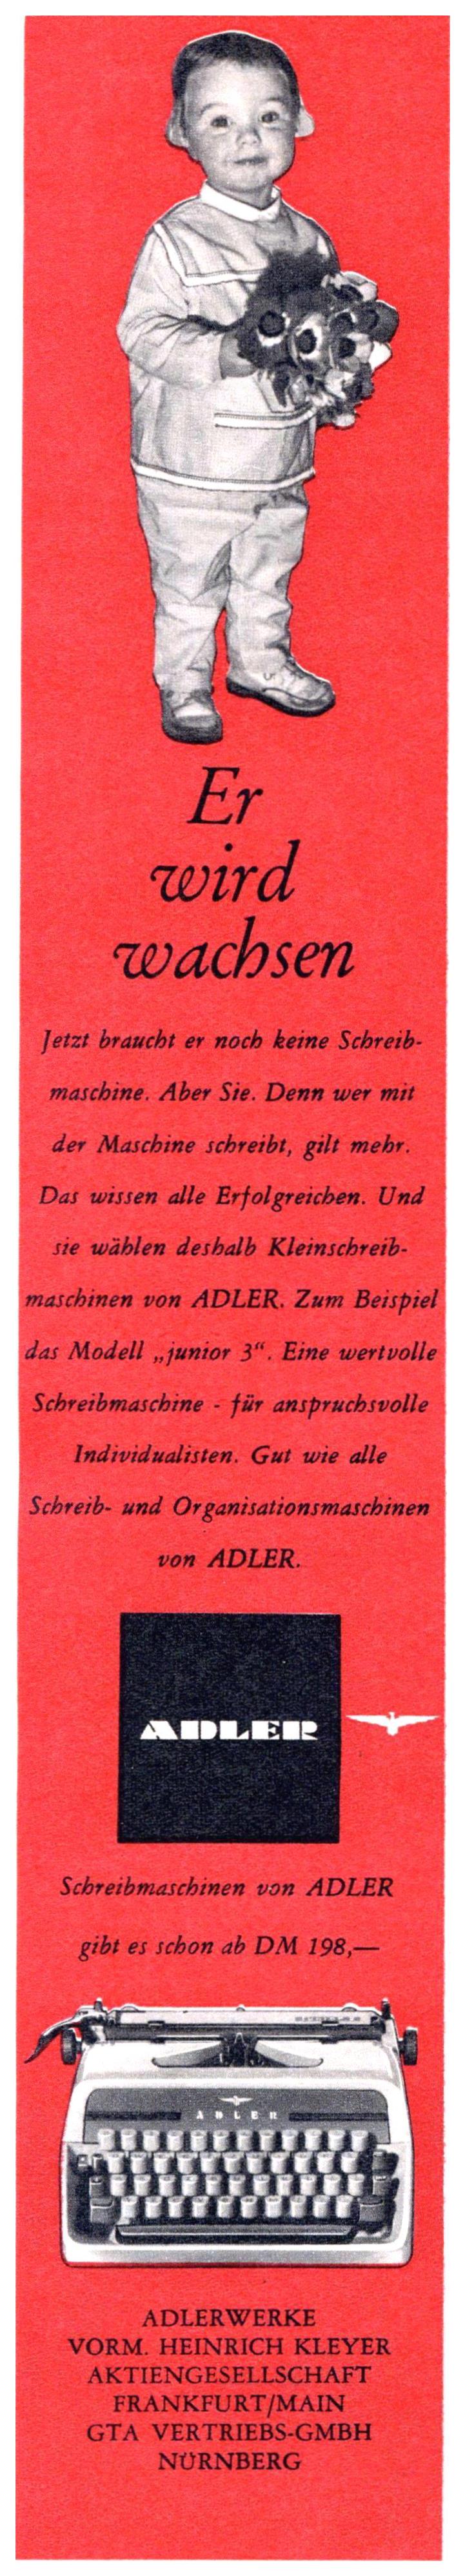 Adler 1964 0.jpg